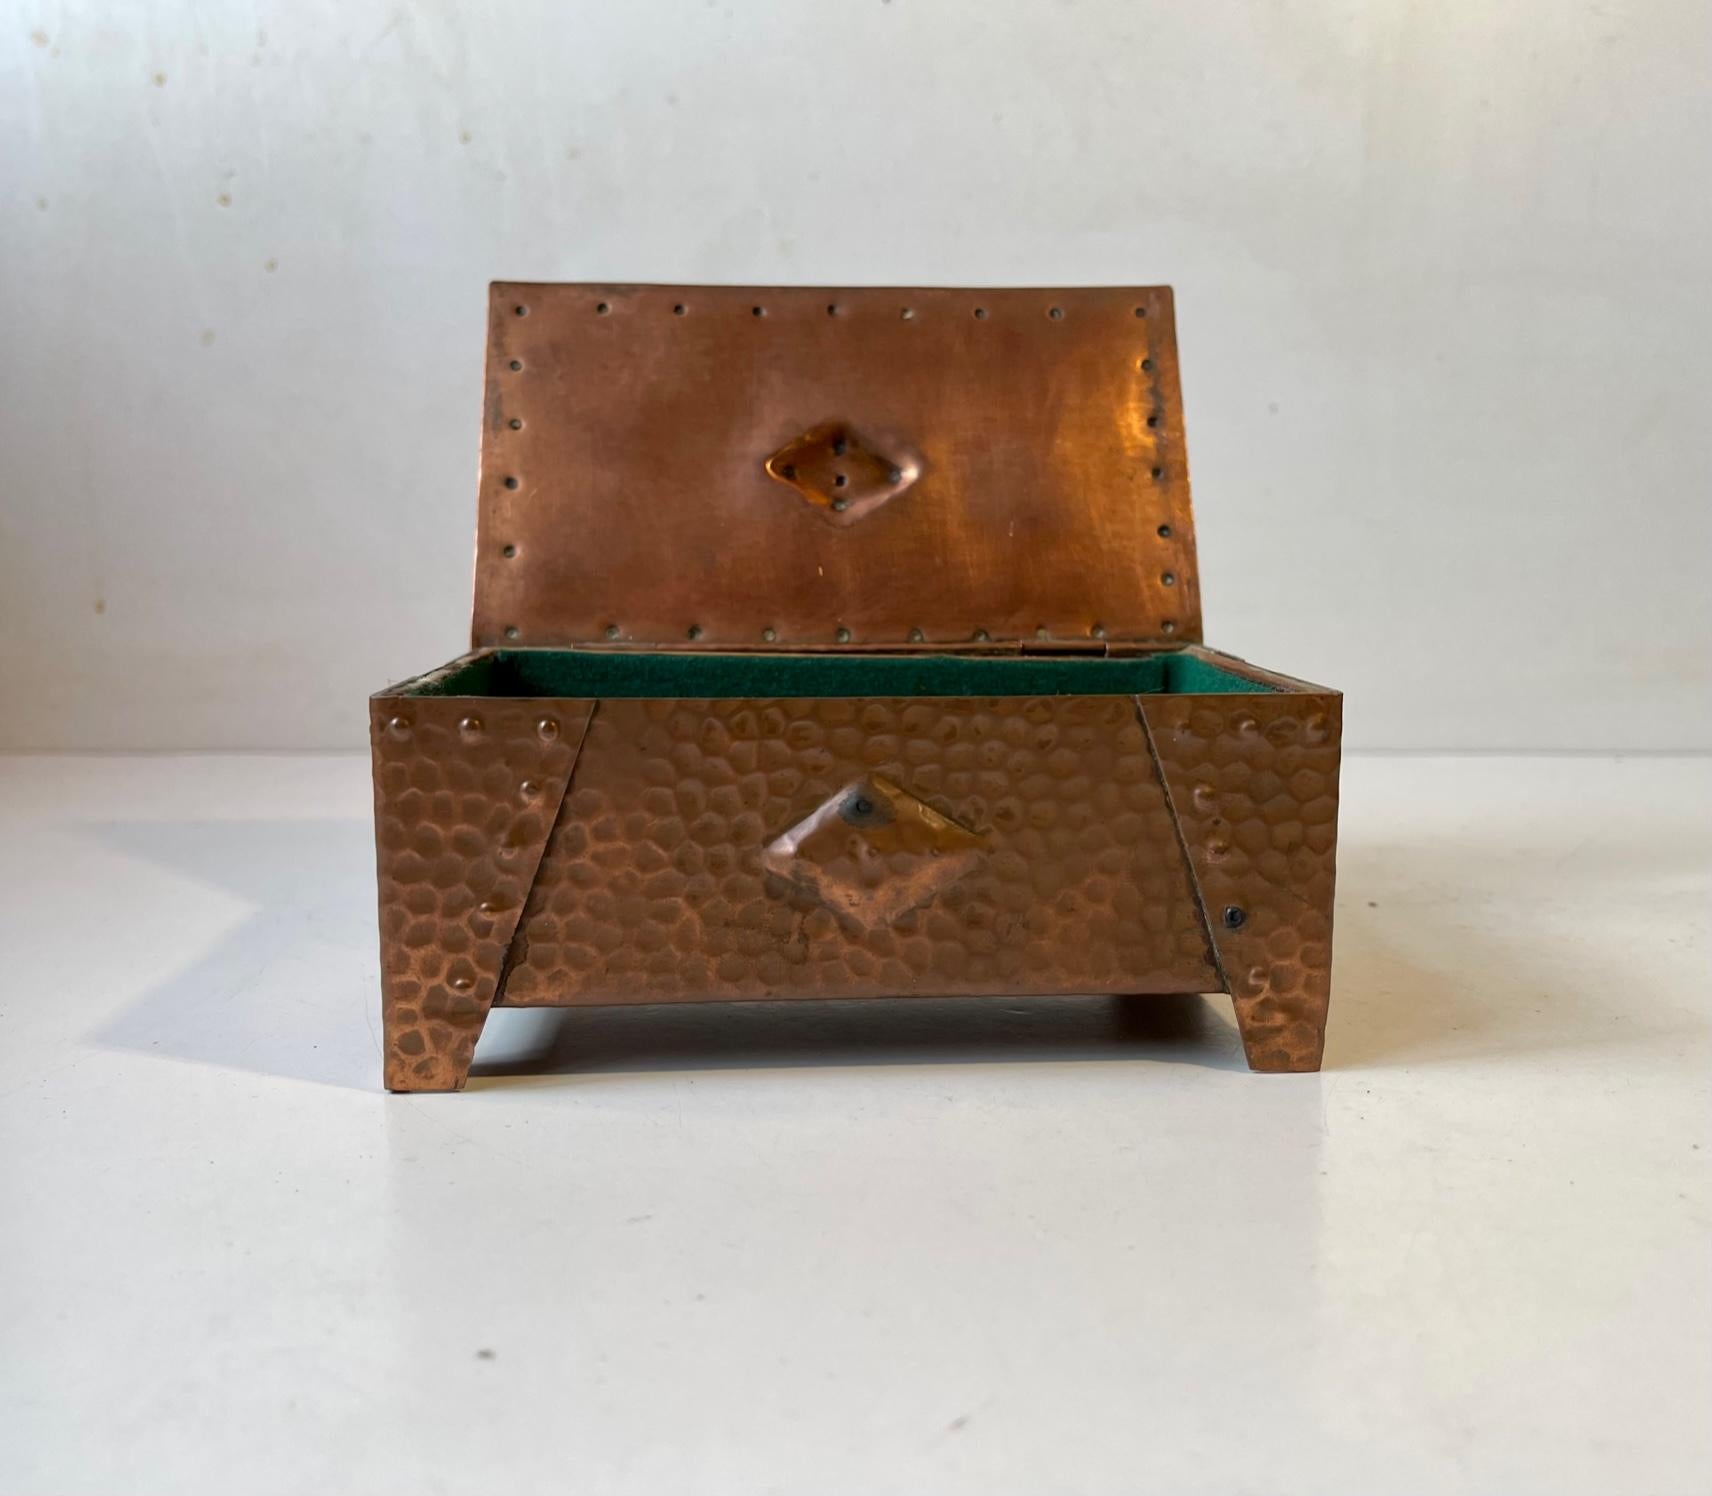 Une boîte bien faite et joliment patinée en cuivre martelé. Convient pour les bijoux ou les petits objets personnels. Un style brutaliste distinct avec un élément architectural Art déco. Il a été fabriqué anonymement en Scandinavie vers 1930-40.